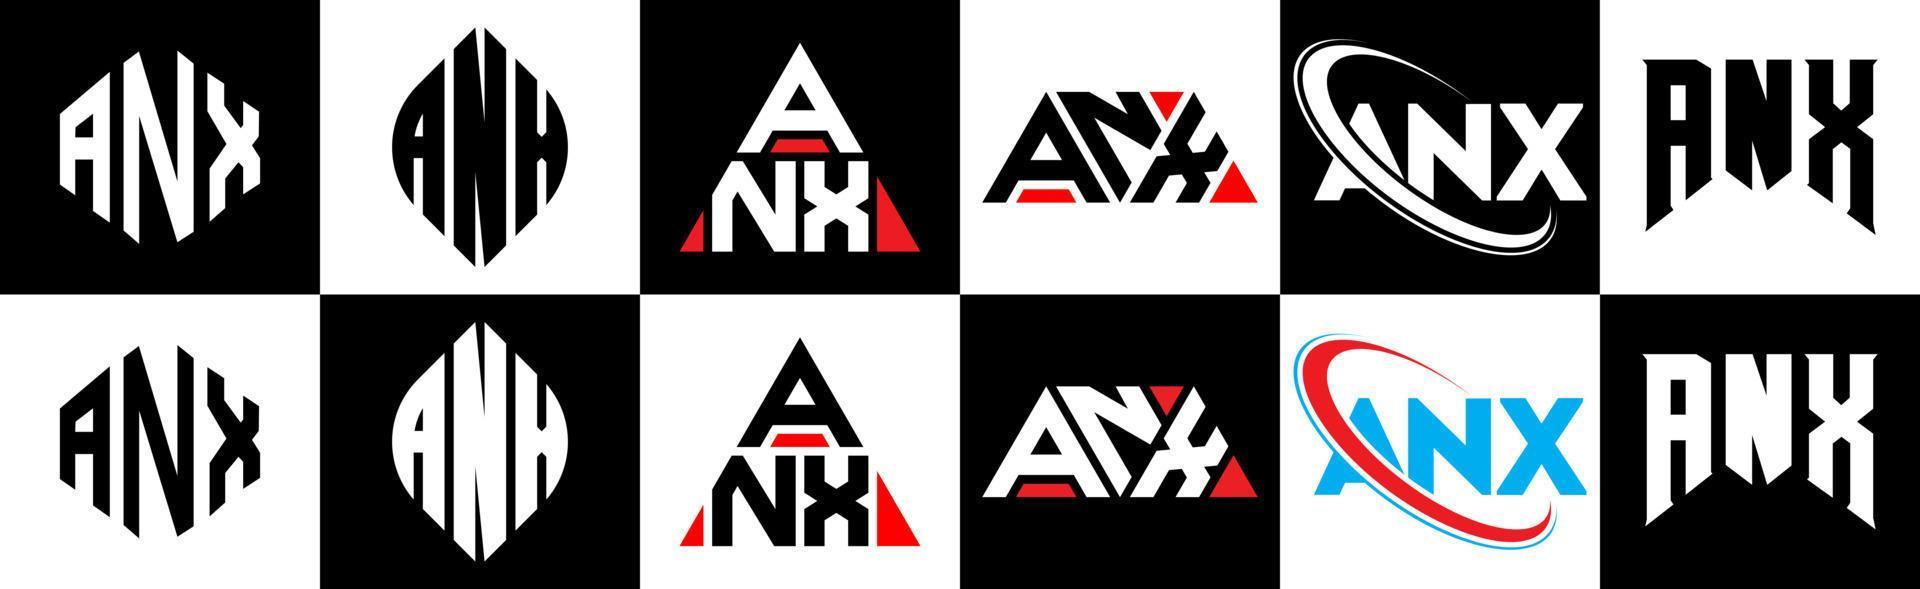 anx-Buchstaben-Logo-Design in sechs Stilen. anx Polygon, Kreis, Dreieck, Sechseck, flacher und einfacher Stil mit schwarz-weißem Buchstabenlogo in einer Zeichenfläche. anx minimalistisches und klassisches Logo vektor